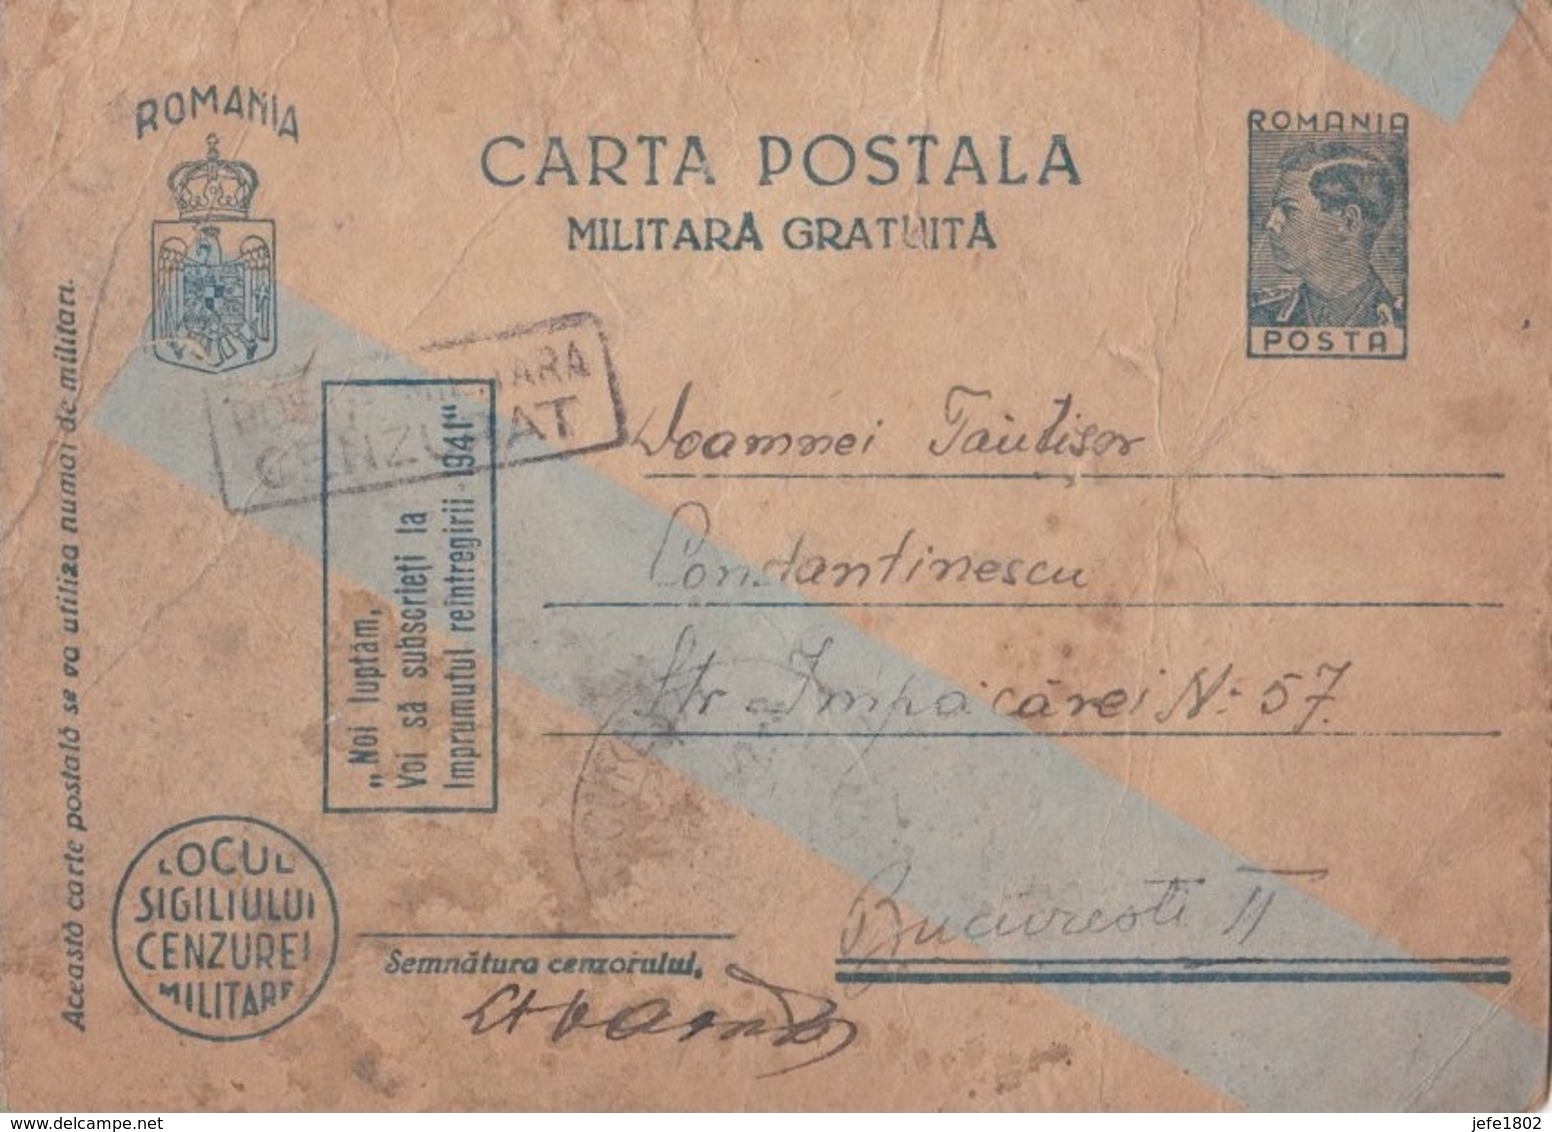 WO II - Carta Postala - Militara Gratuita - Portofreiheit